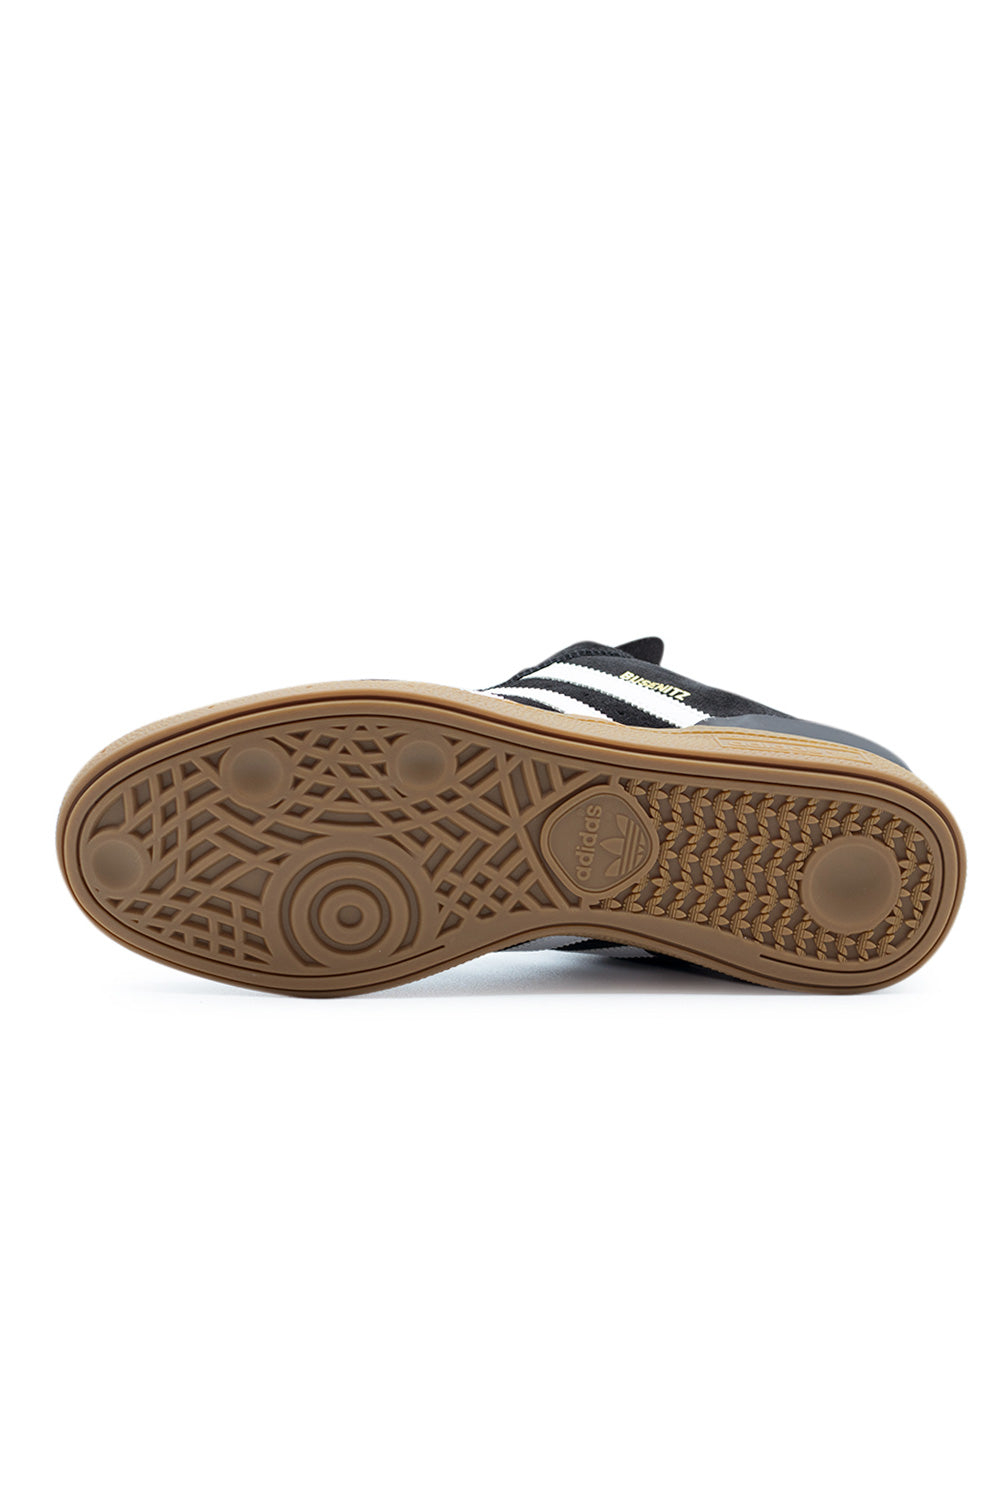 Adidas Busenitz Shoe Core Black / Footwear White / Gold Metallic - BONKERS